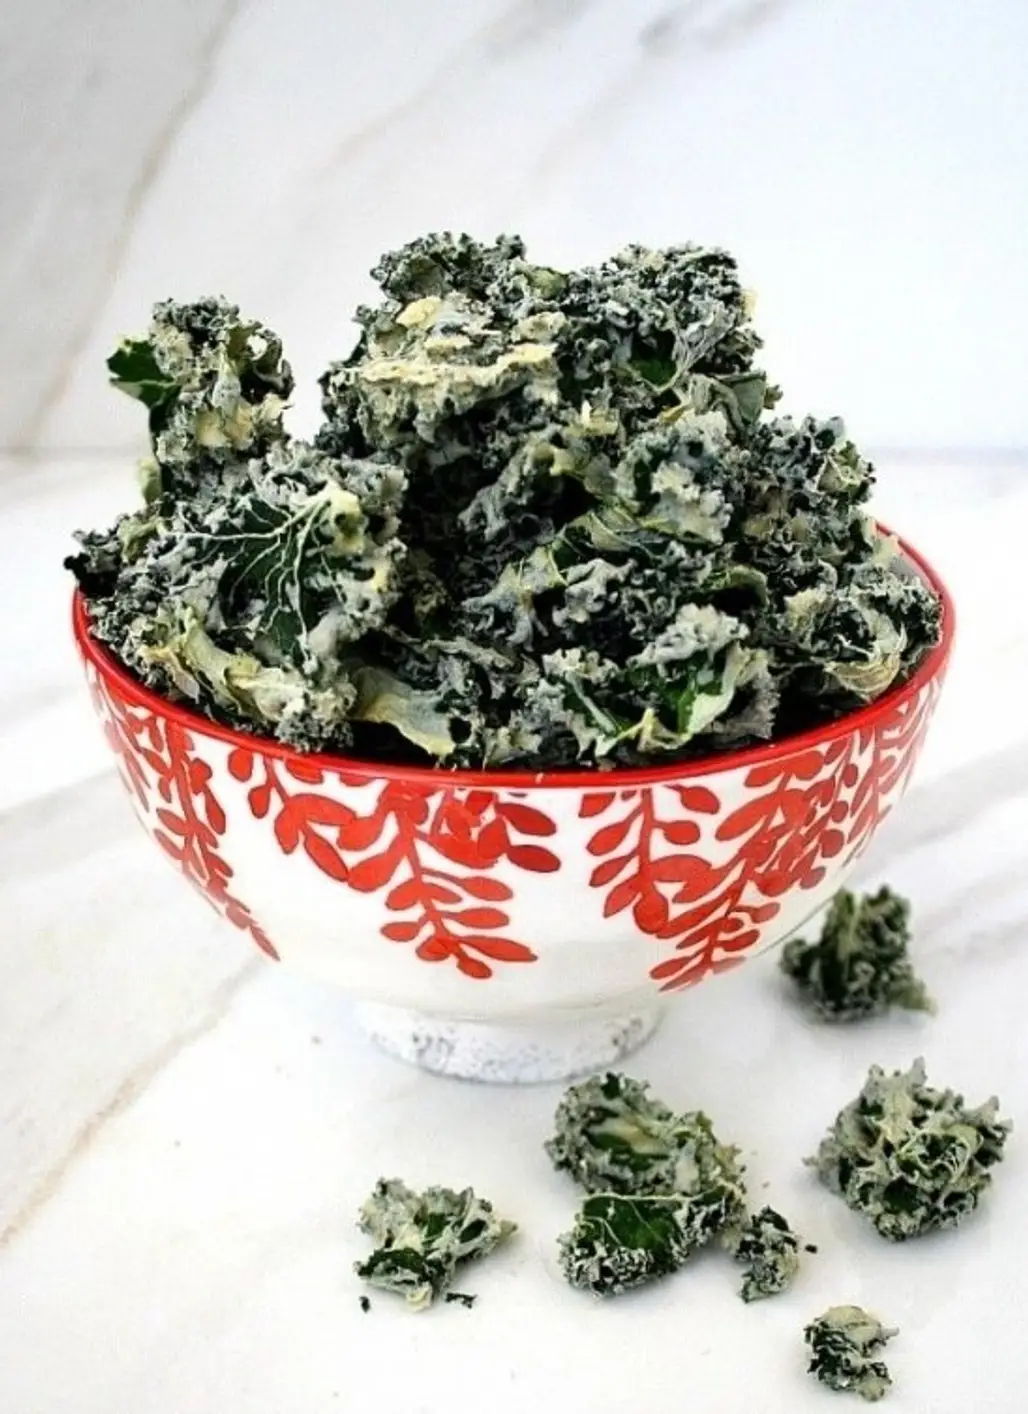 Kale for Heart Disease